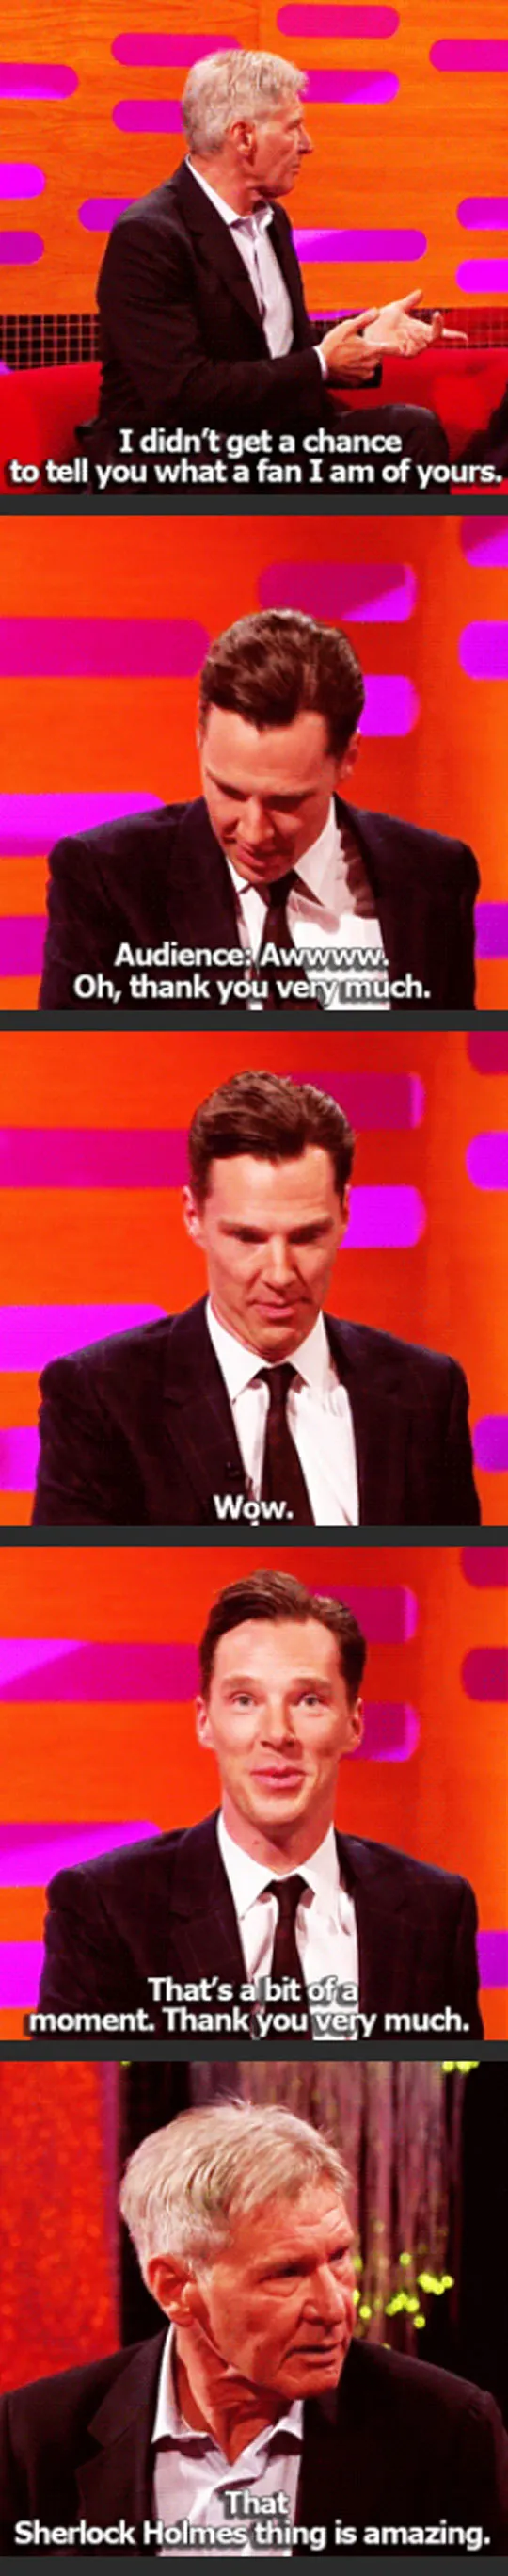 Cumberbatch having a bit of a moment